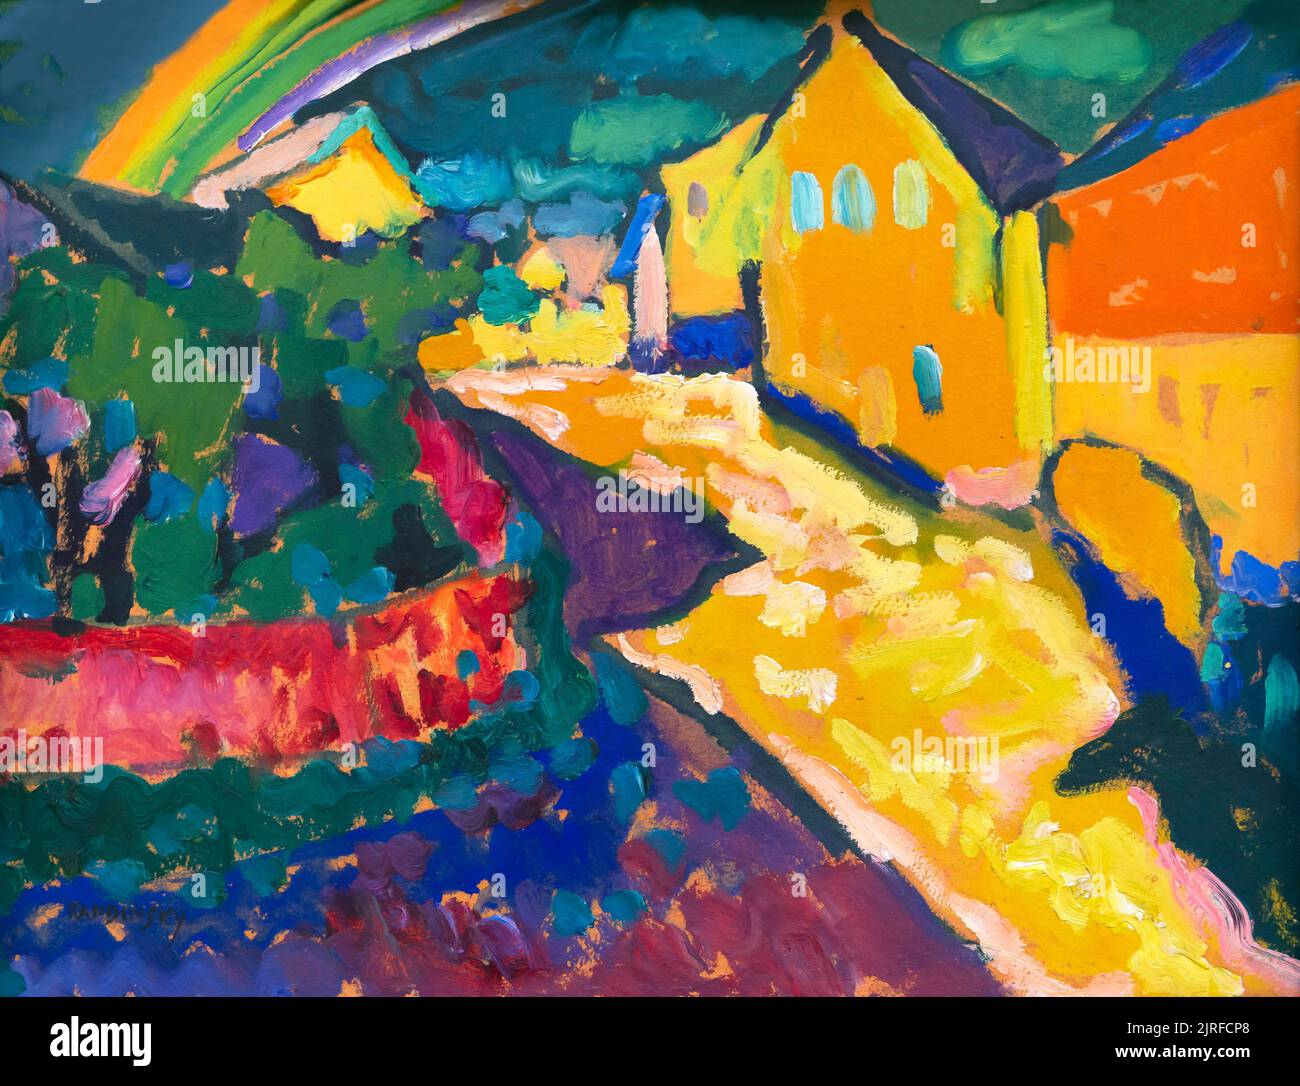 Murnau - Landscape with Rainbow, Wassily Kandinsky, 1909, Lenbachhaus, Munich, Germany, Europe Stock Photo